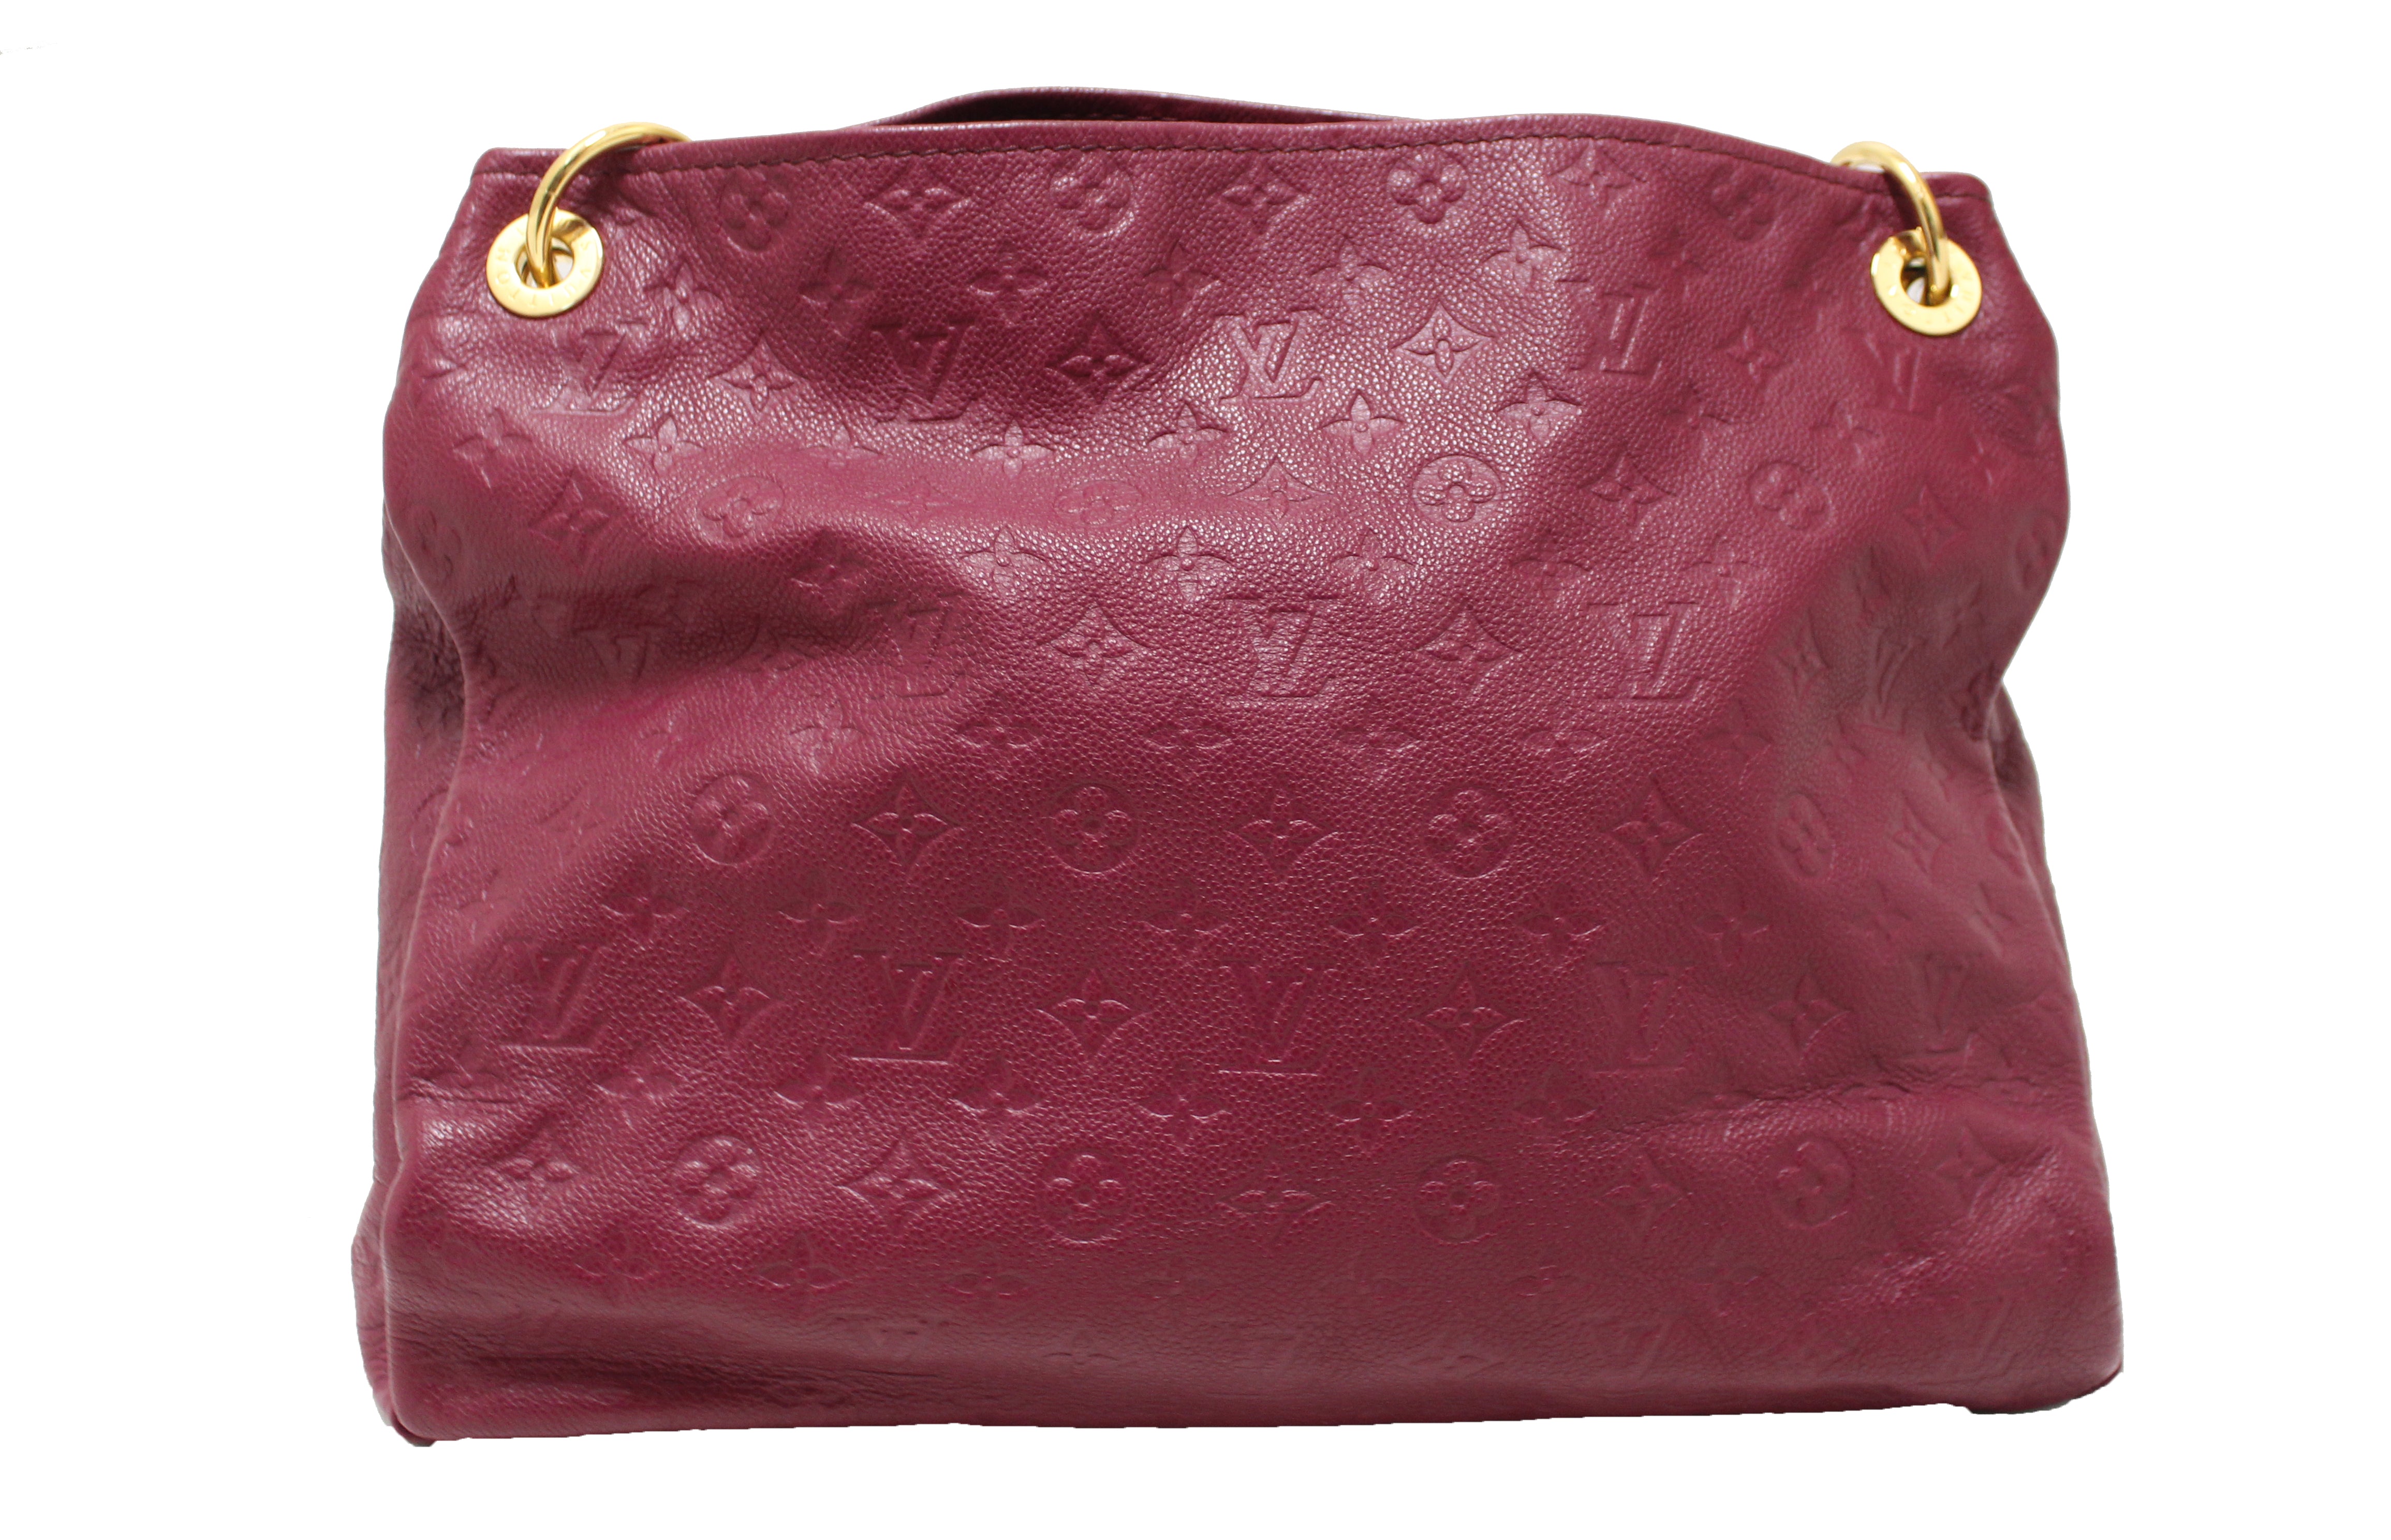 Louis Vuitton Empreinte Leather Hobo Bag